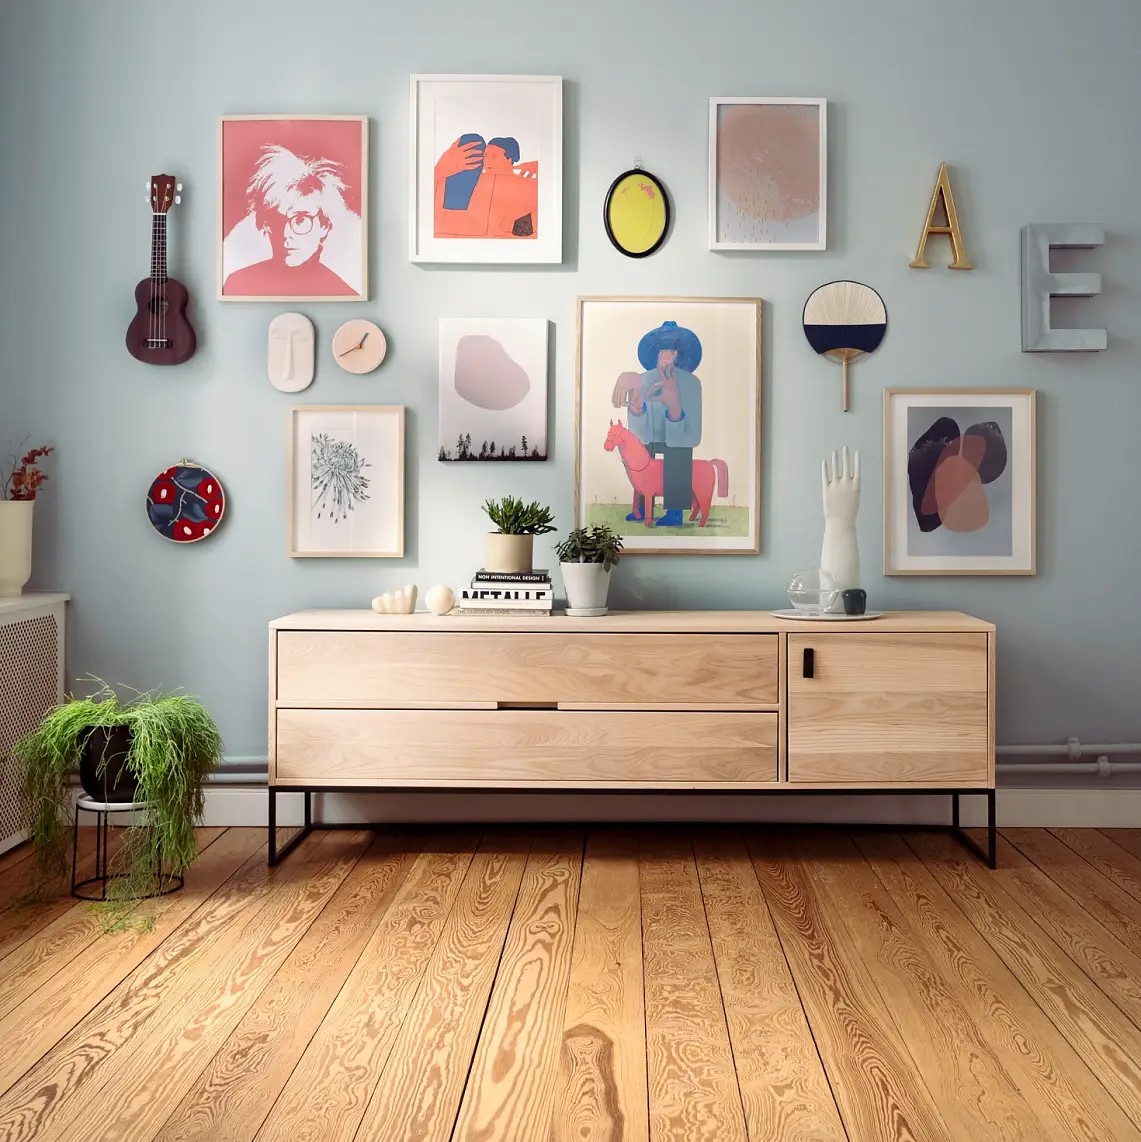 Wall Gallery – Teaser: Bilder, Buchstaben, Geige und Deko-Elemente hängen an heller Zimmerwand.